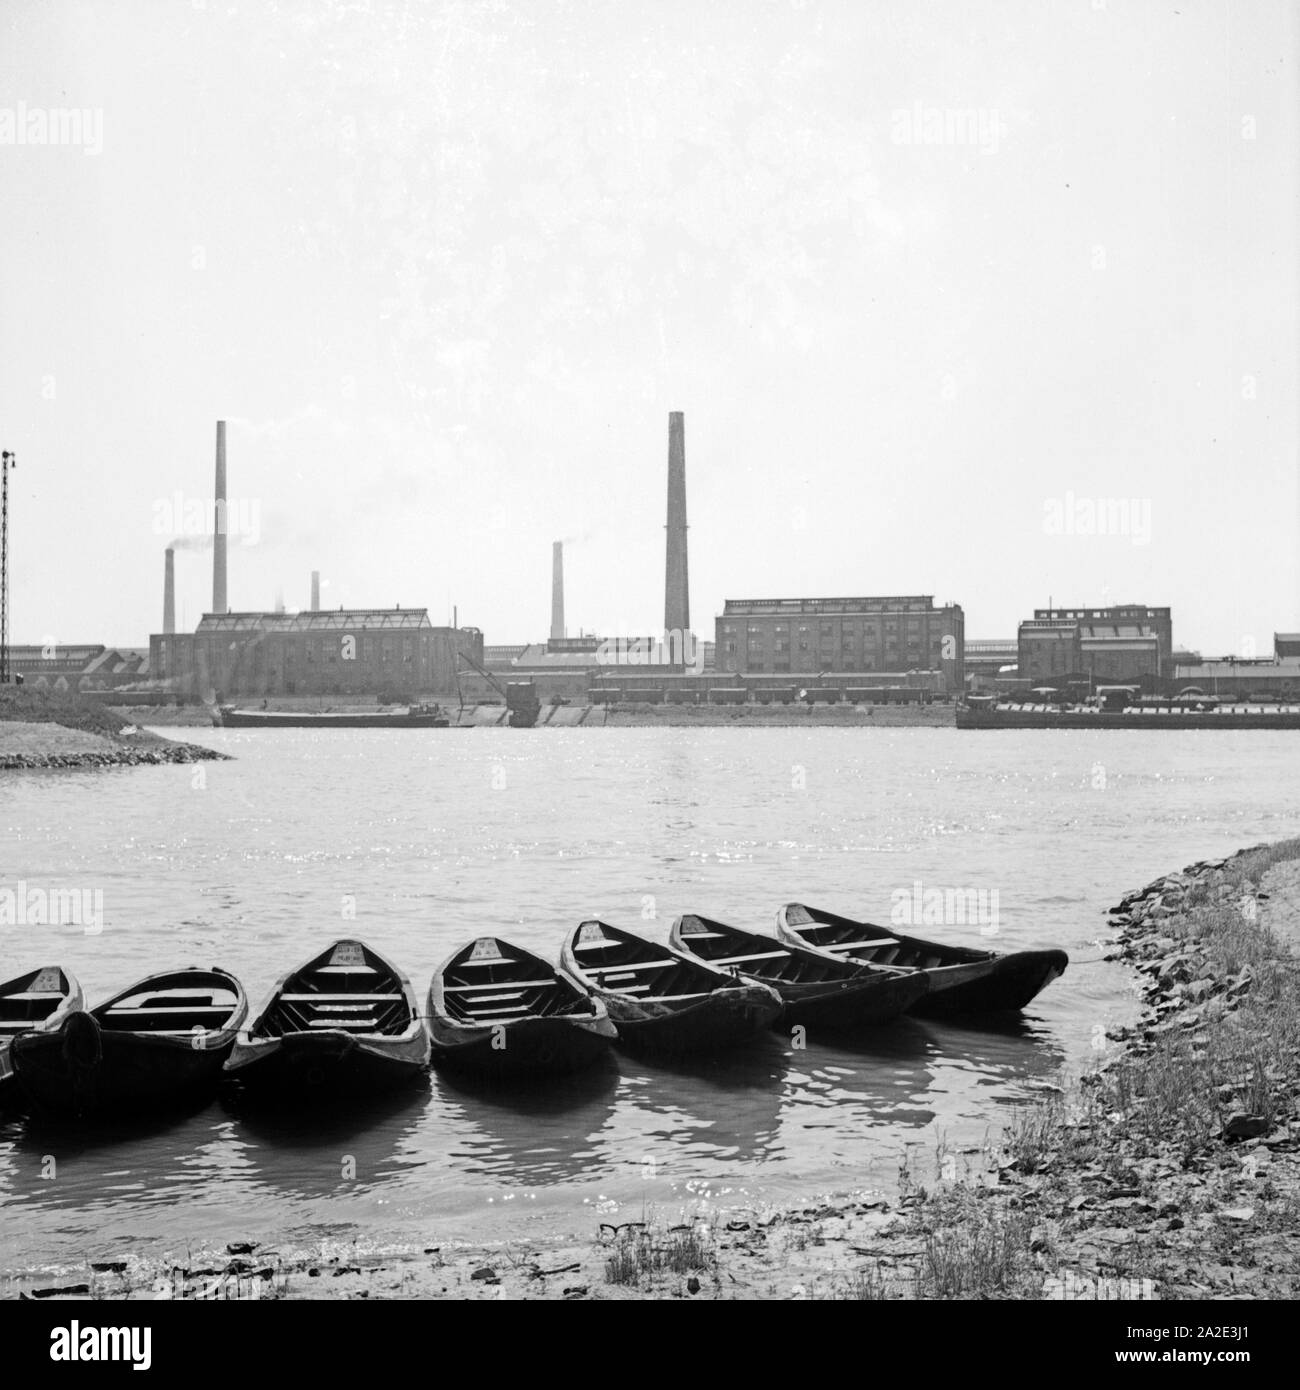 Sieben Ruderboote am Rheinufer in Ludwigshafen, gegenüber den BASF-Werken, Deutschland 1930er Jahre. Sieben Ruderboote am Ufer des Rheins, gegenüber von der BASF arbeitet, Deutschland 1930. Stockfoto